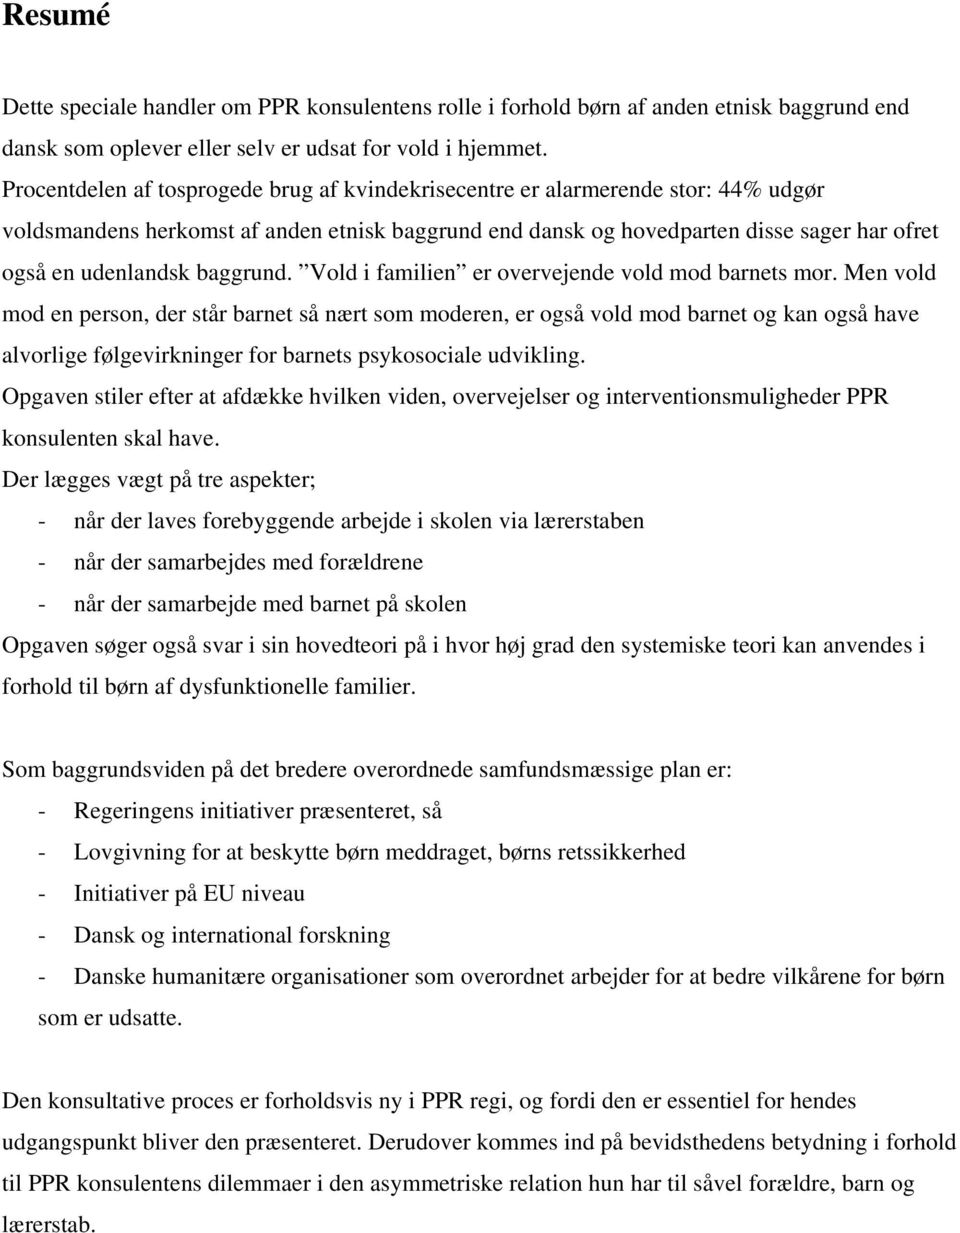 PPR konsulentens rolle i forhold i hjem med anden etnisk baggrund end dansk Systemisk - PDF Gratis download